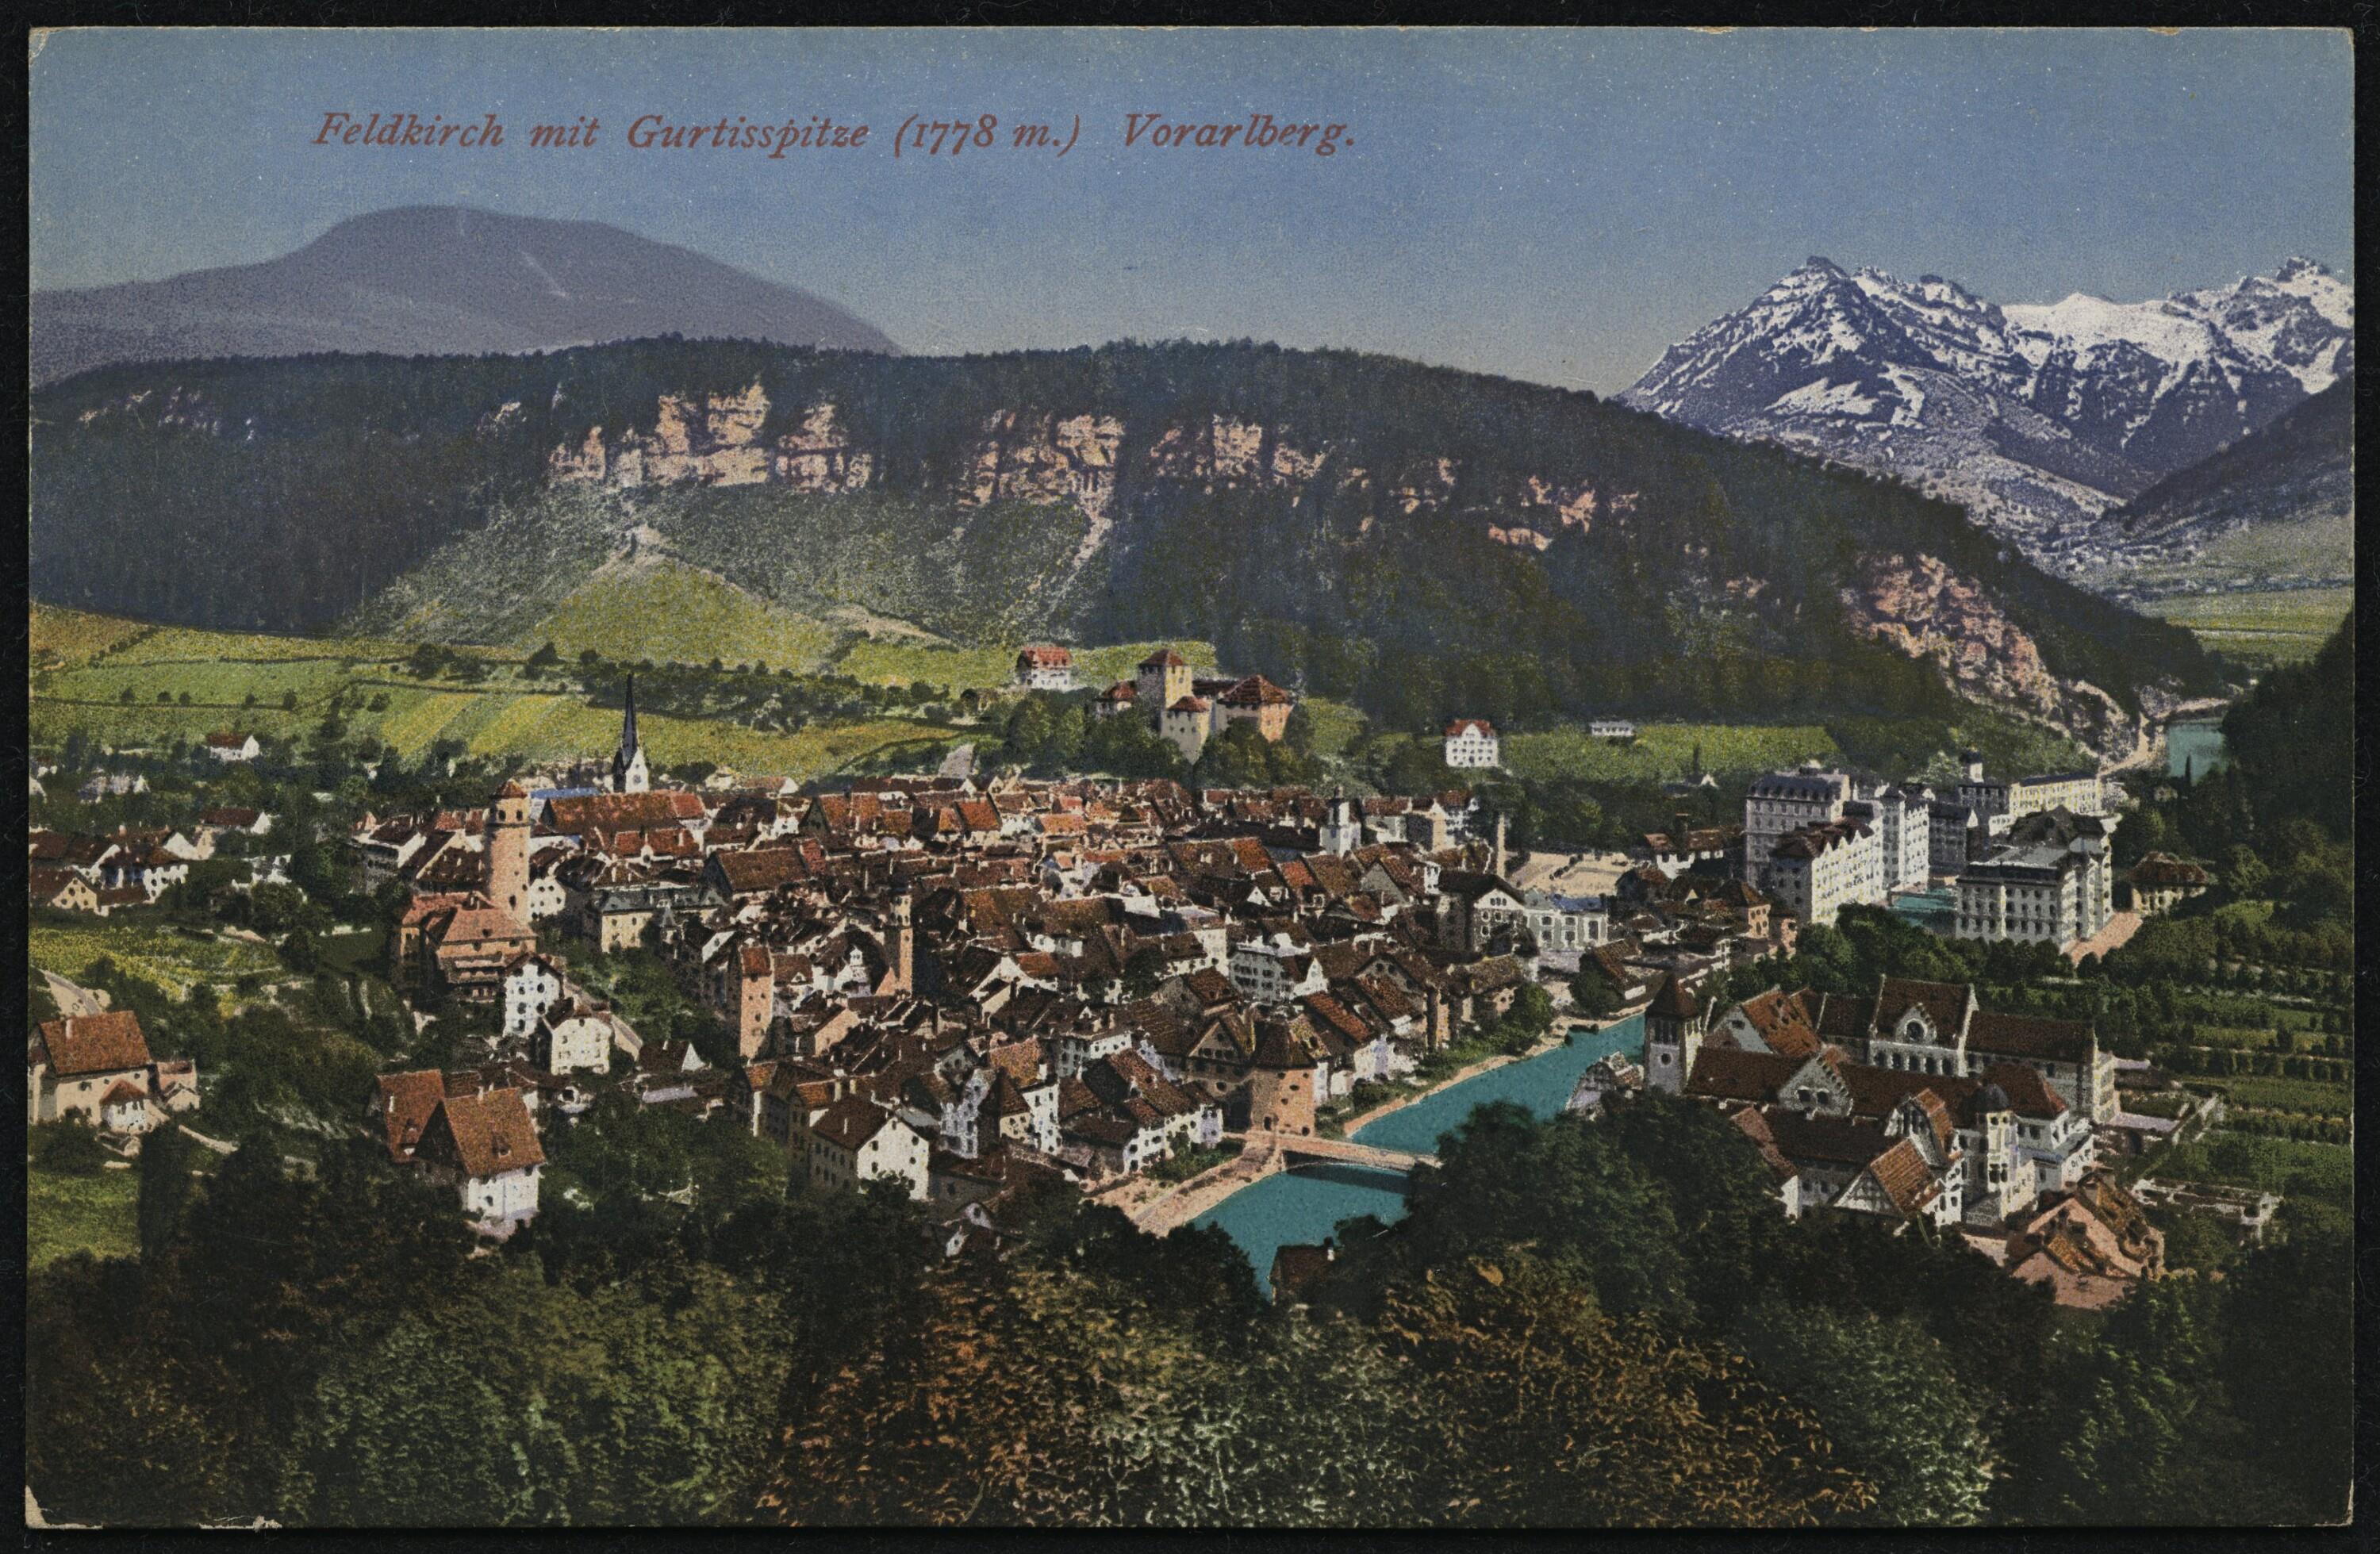 Feldkirch mit Gurtisspitze (1778 m.) Vorarlberg></div>


    <hr>
    <div class=